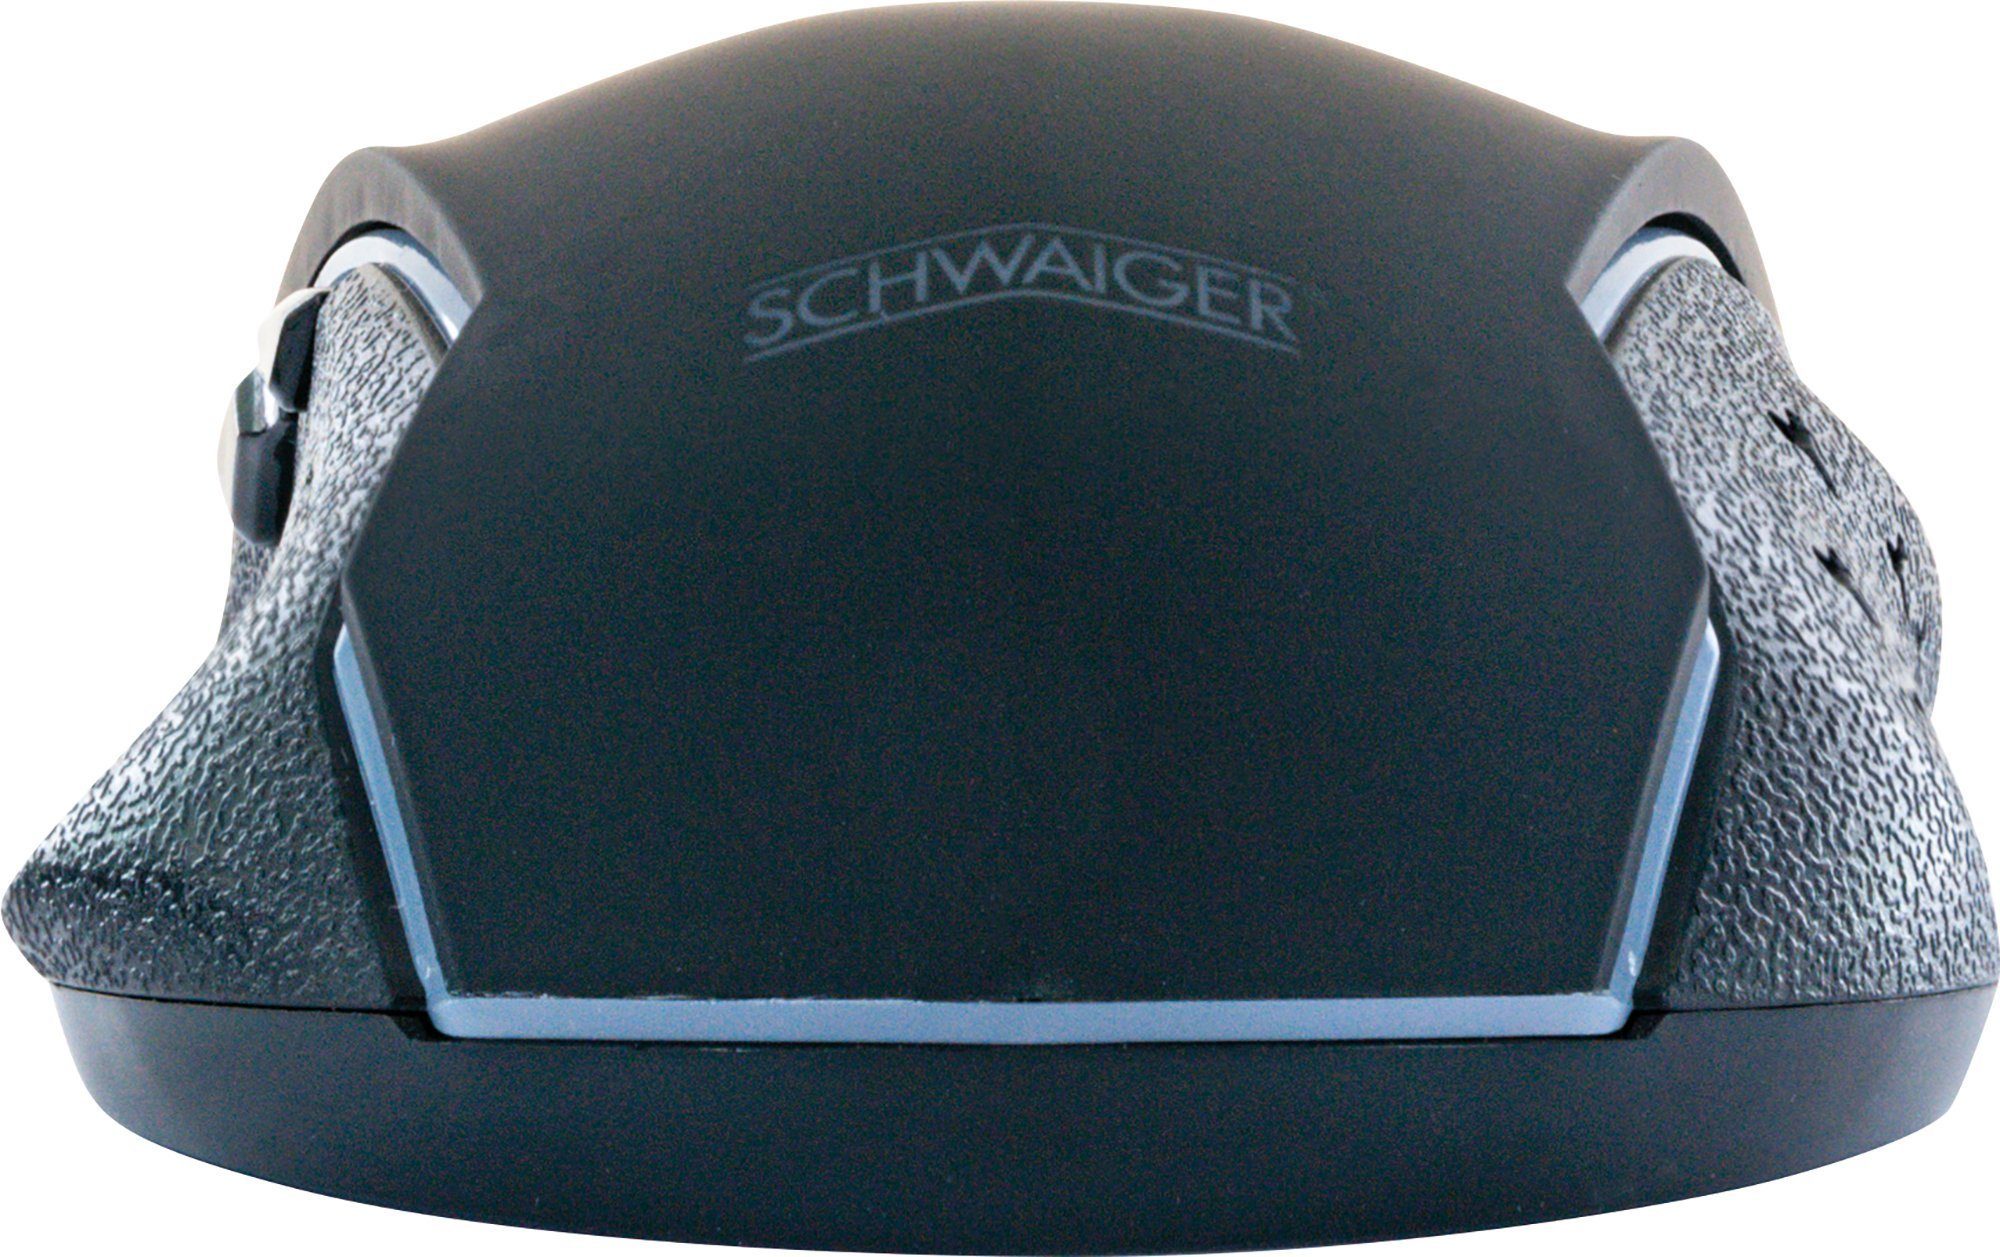 Schwaiger GM3000 (kabelgebunden, Hindergrundbeleuchtung) Gaming-Maus farbwechselnde